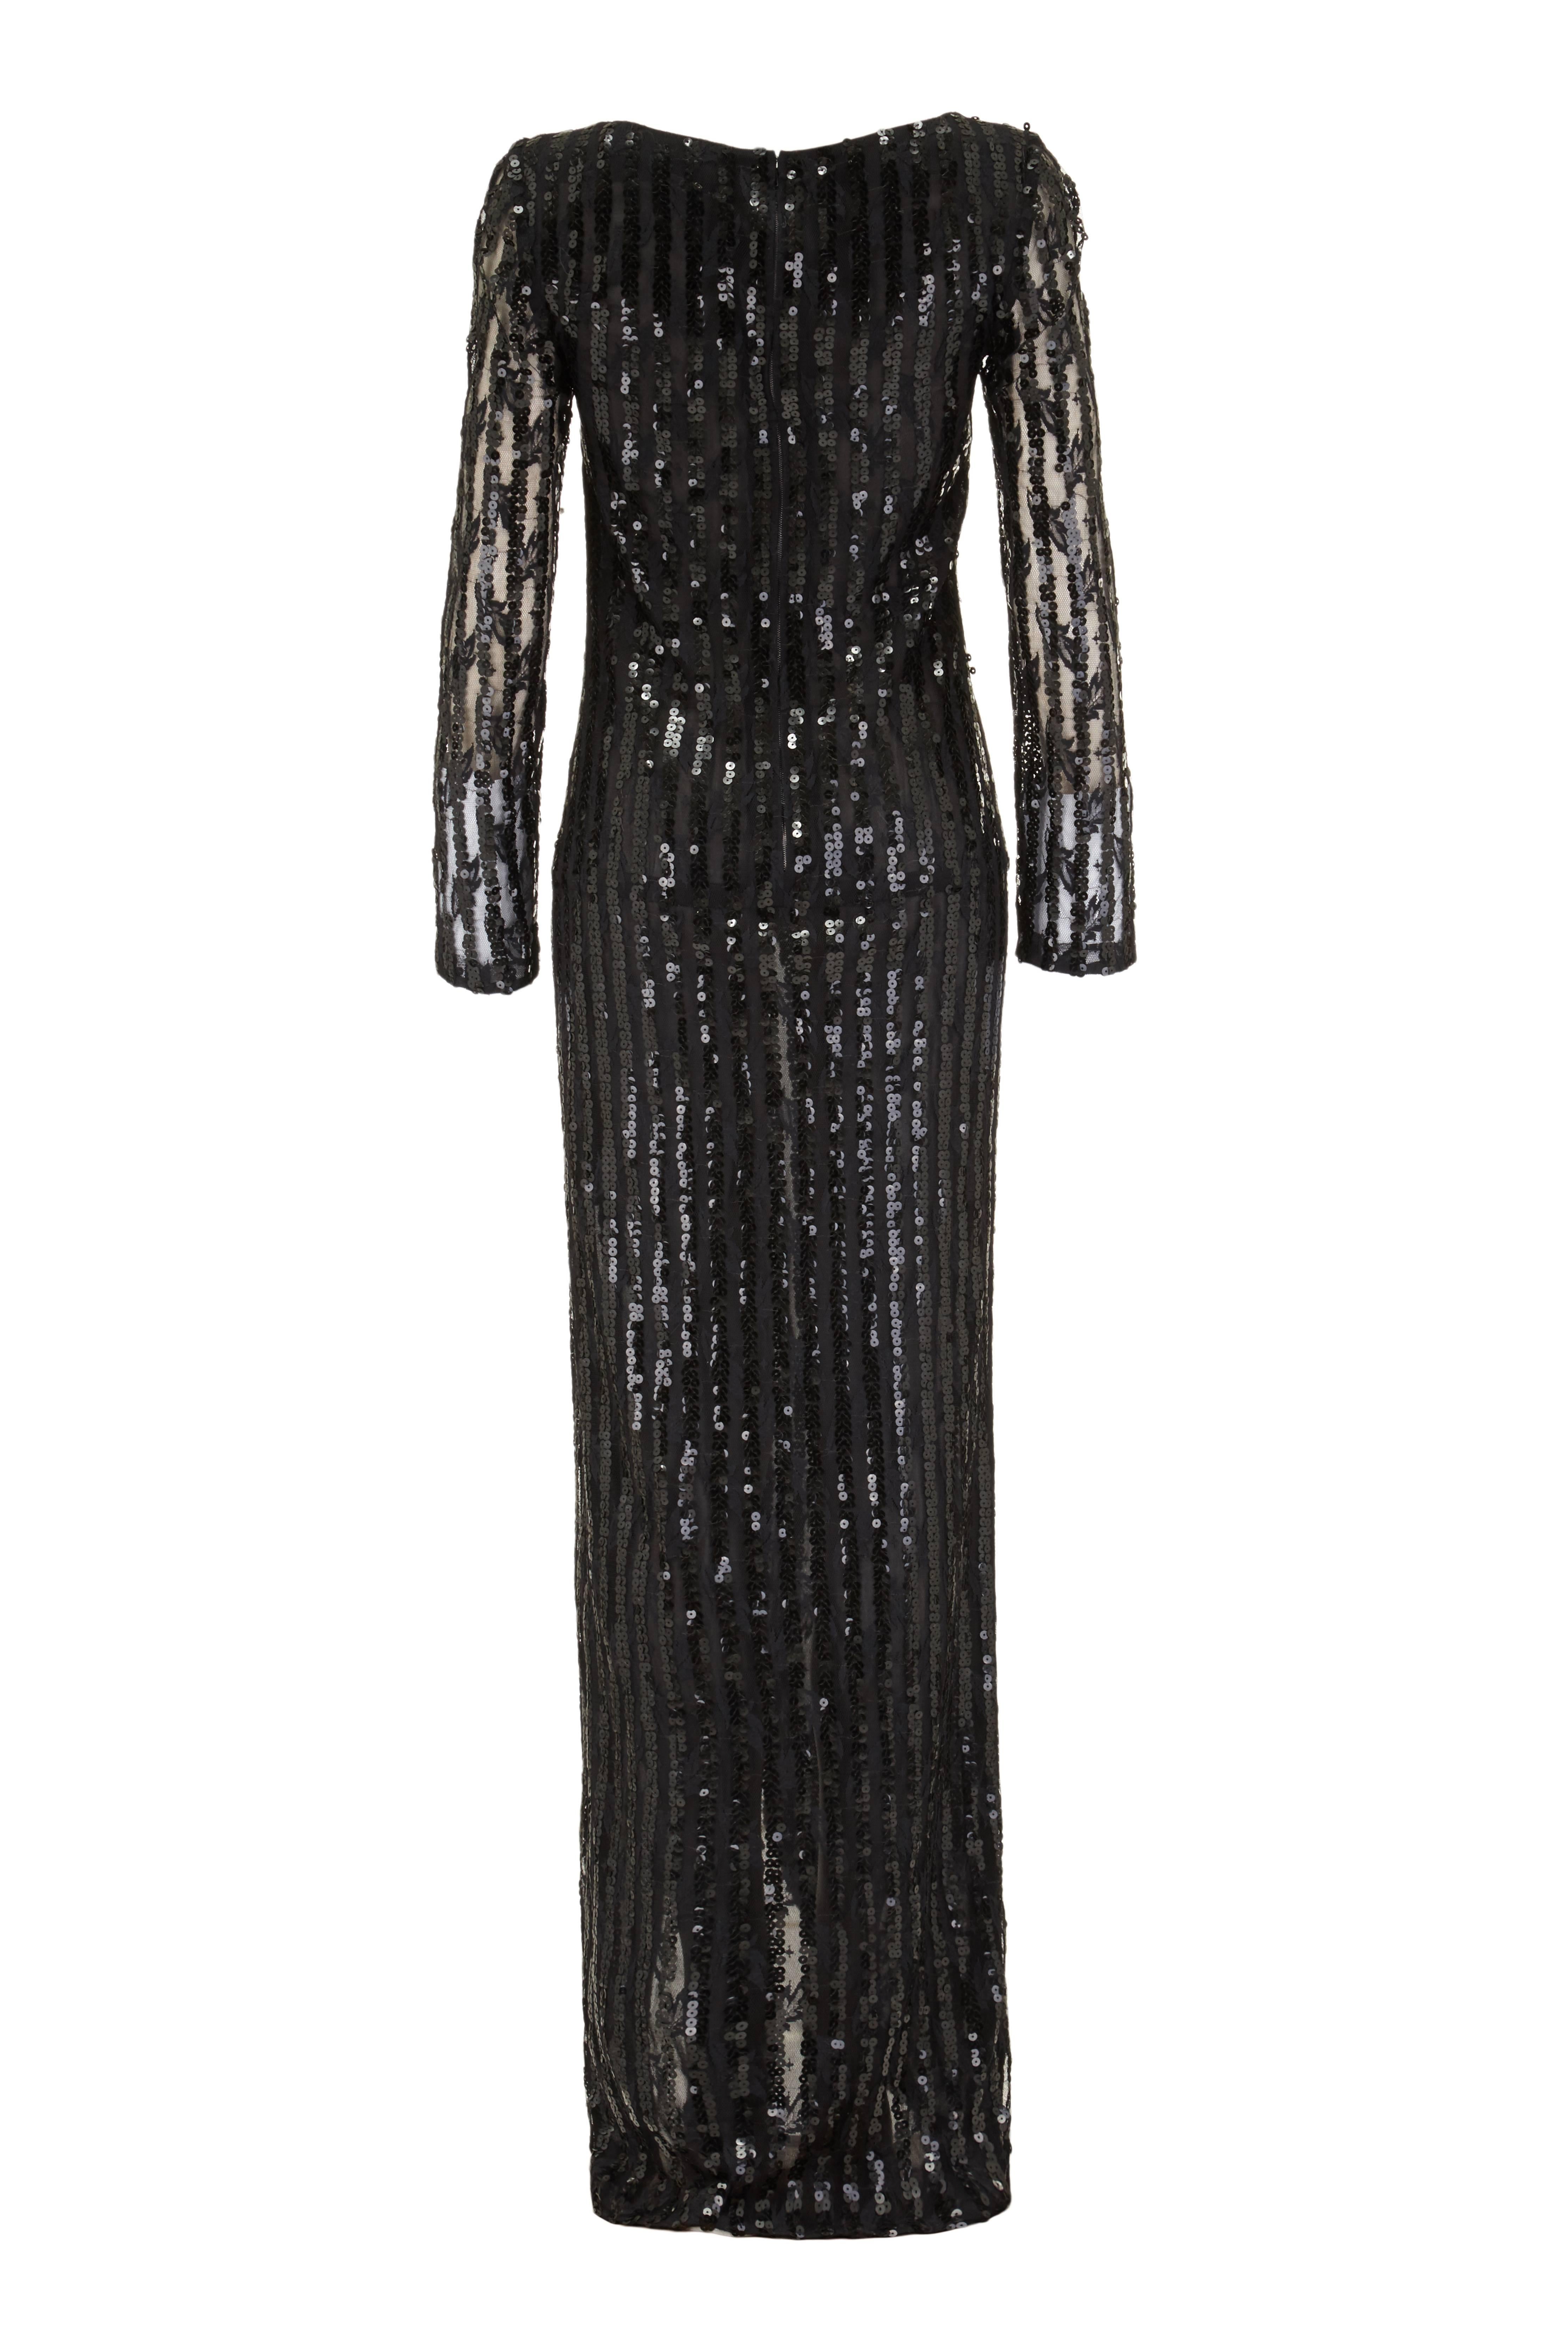 Cette robe de soirée sensationnelle en dentelle noire à paillettes du designer italien Andre Laug est très glamour et fera tourner les têtes ! Cette pièce saisissante est faite d'un filet de dentelle en rayonne avec des bandes verticales de